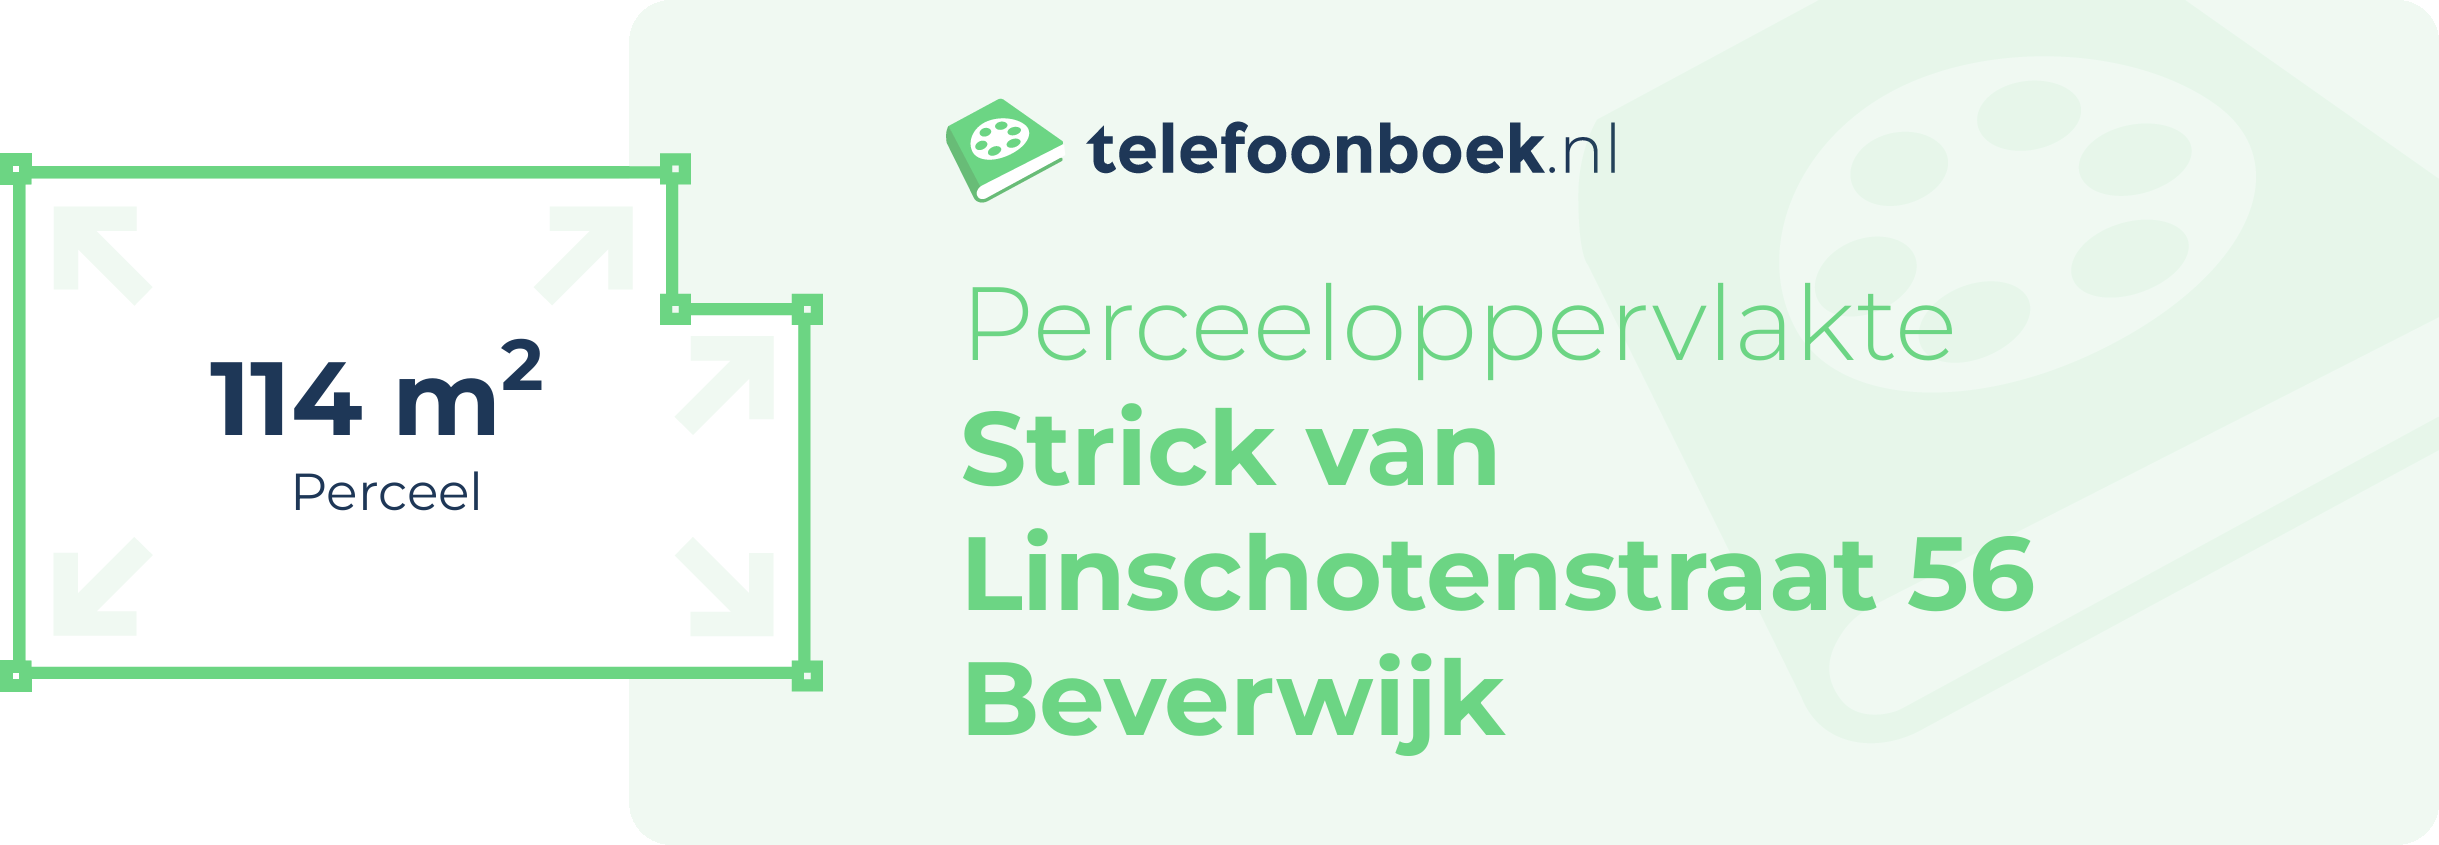 Perceeloppervlakte Strick Van Linschotenstraat 56 Beverwijk